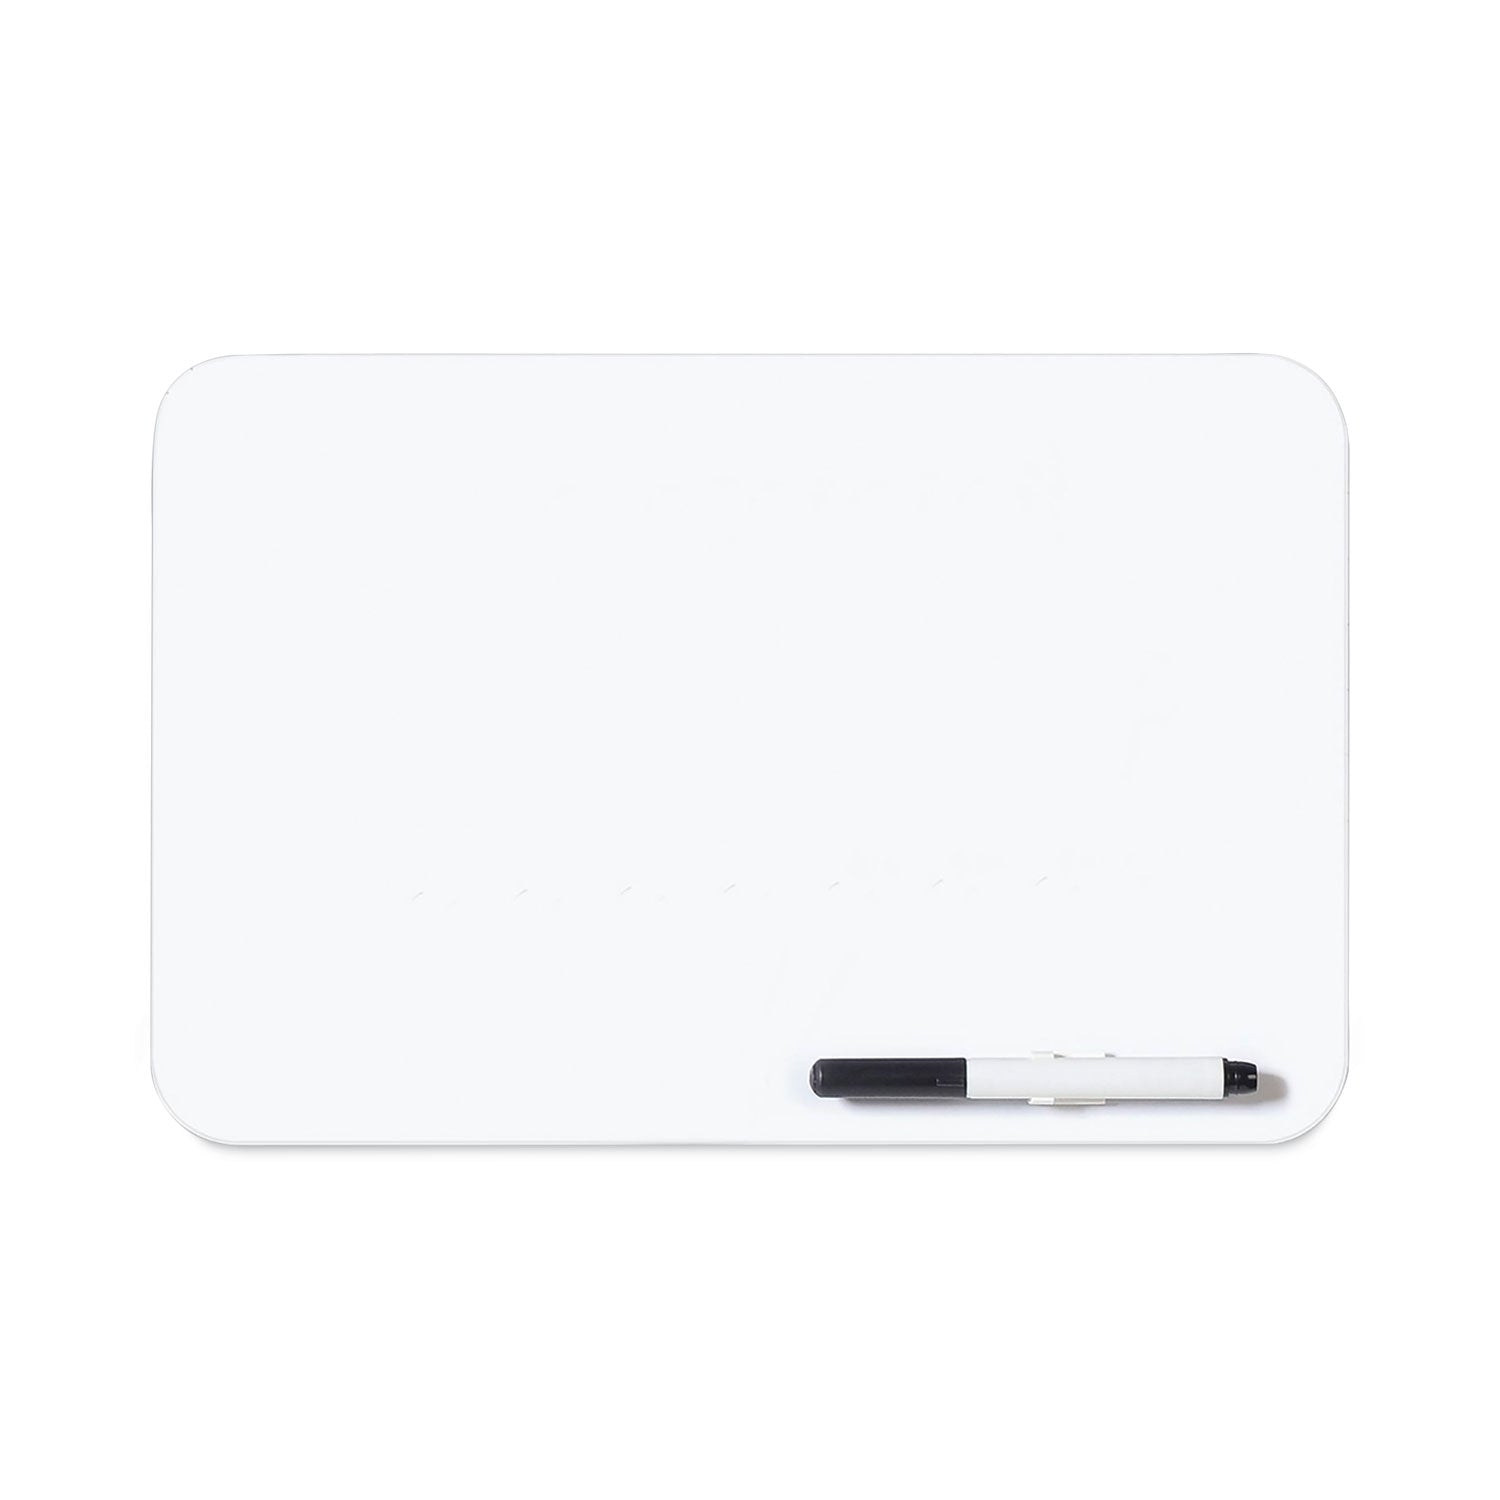 dry-erase-lap-board-1188-x-825-white-surface_bvcmb8034397r - 1